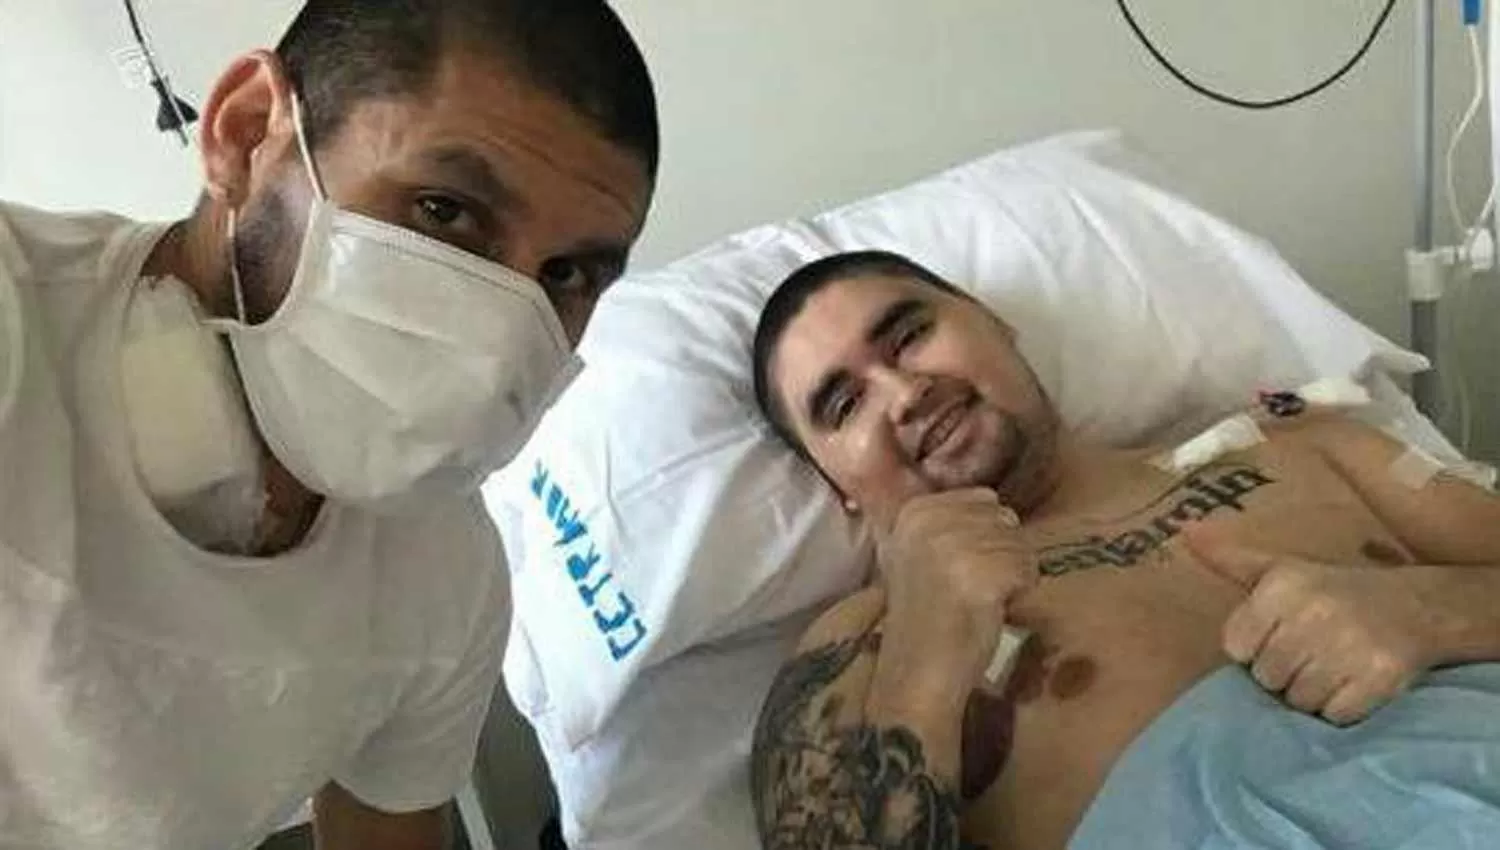 LA OPERACIÓN FUE UN ÉXITO. Villagra le donó médula ósea a su hermano. (FOTO TOMADA DE TWITTER @M_CARABAJAL)

